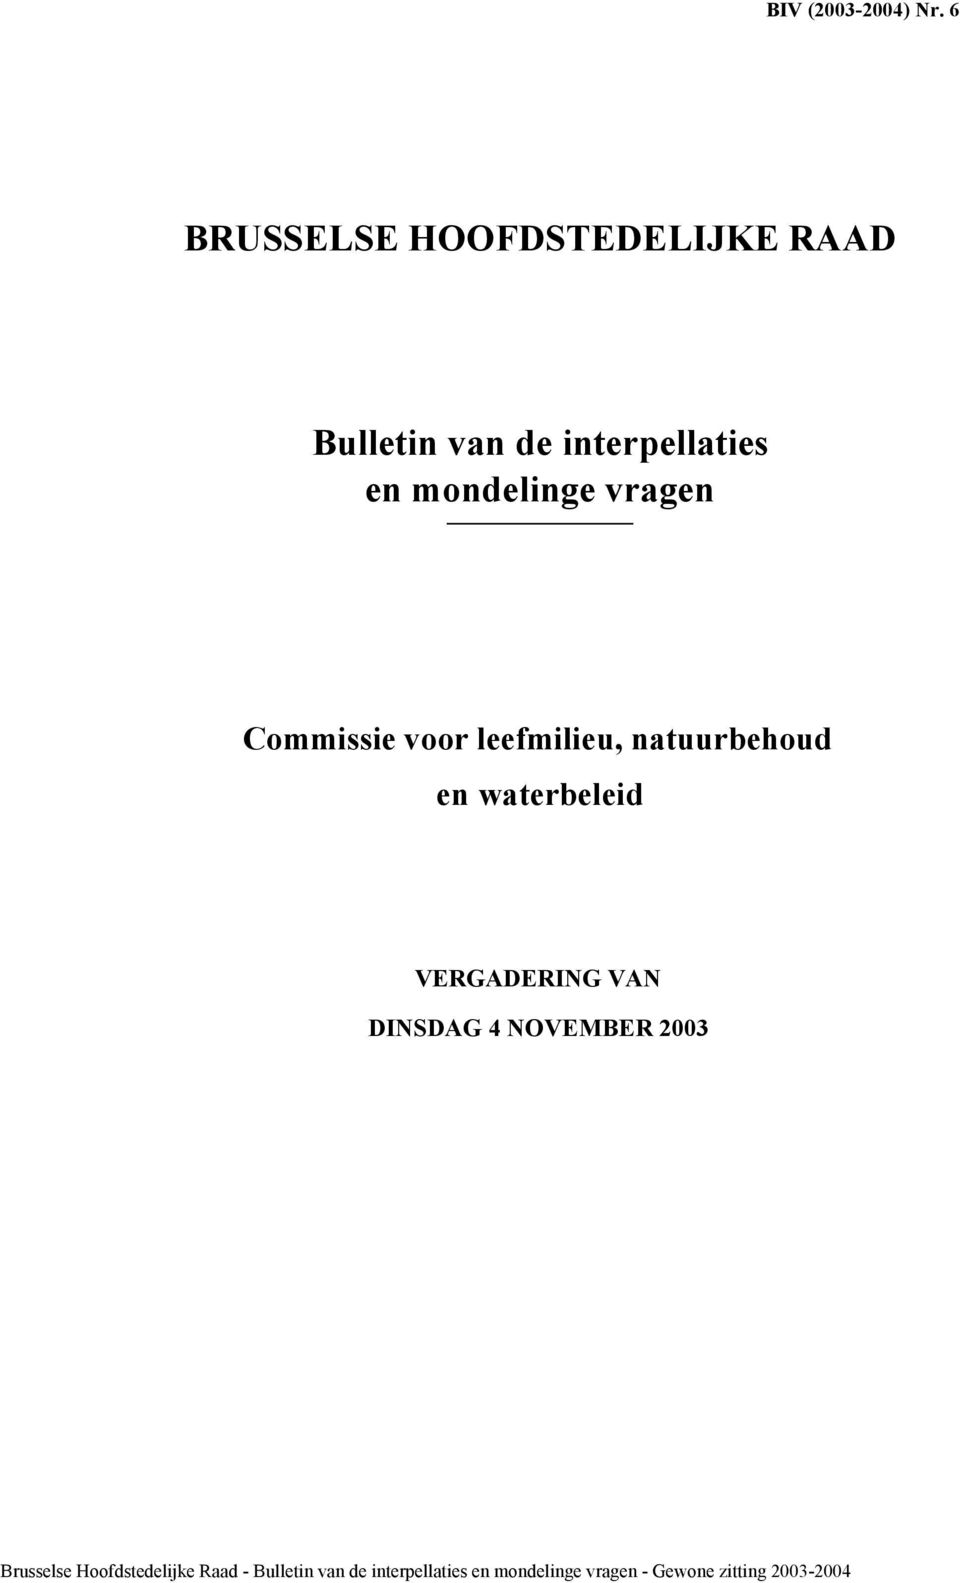 VERGADERING VAN DINSDAG 4 NOVEMBER 2003 Brusselse Hoofdstedelijke Raad -